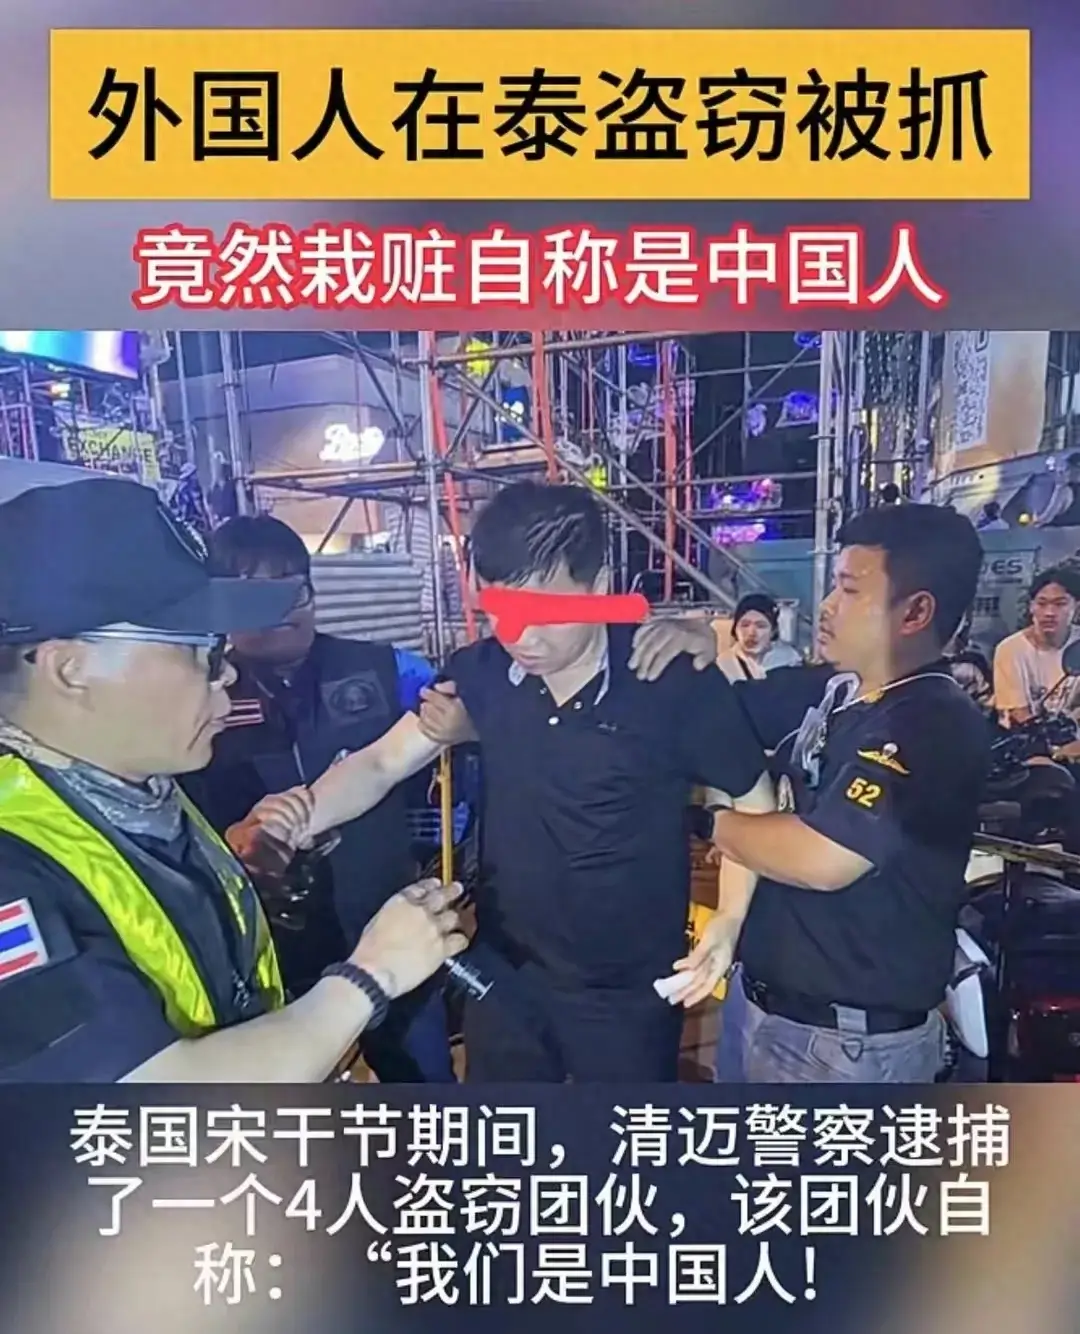 韩国人泰国被抓谎称是中国人,4名韩国人在泰国泼水节行窃被抓